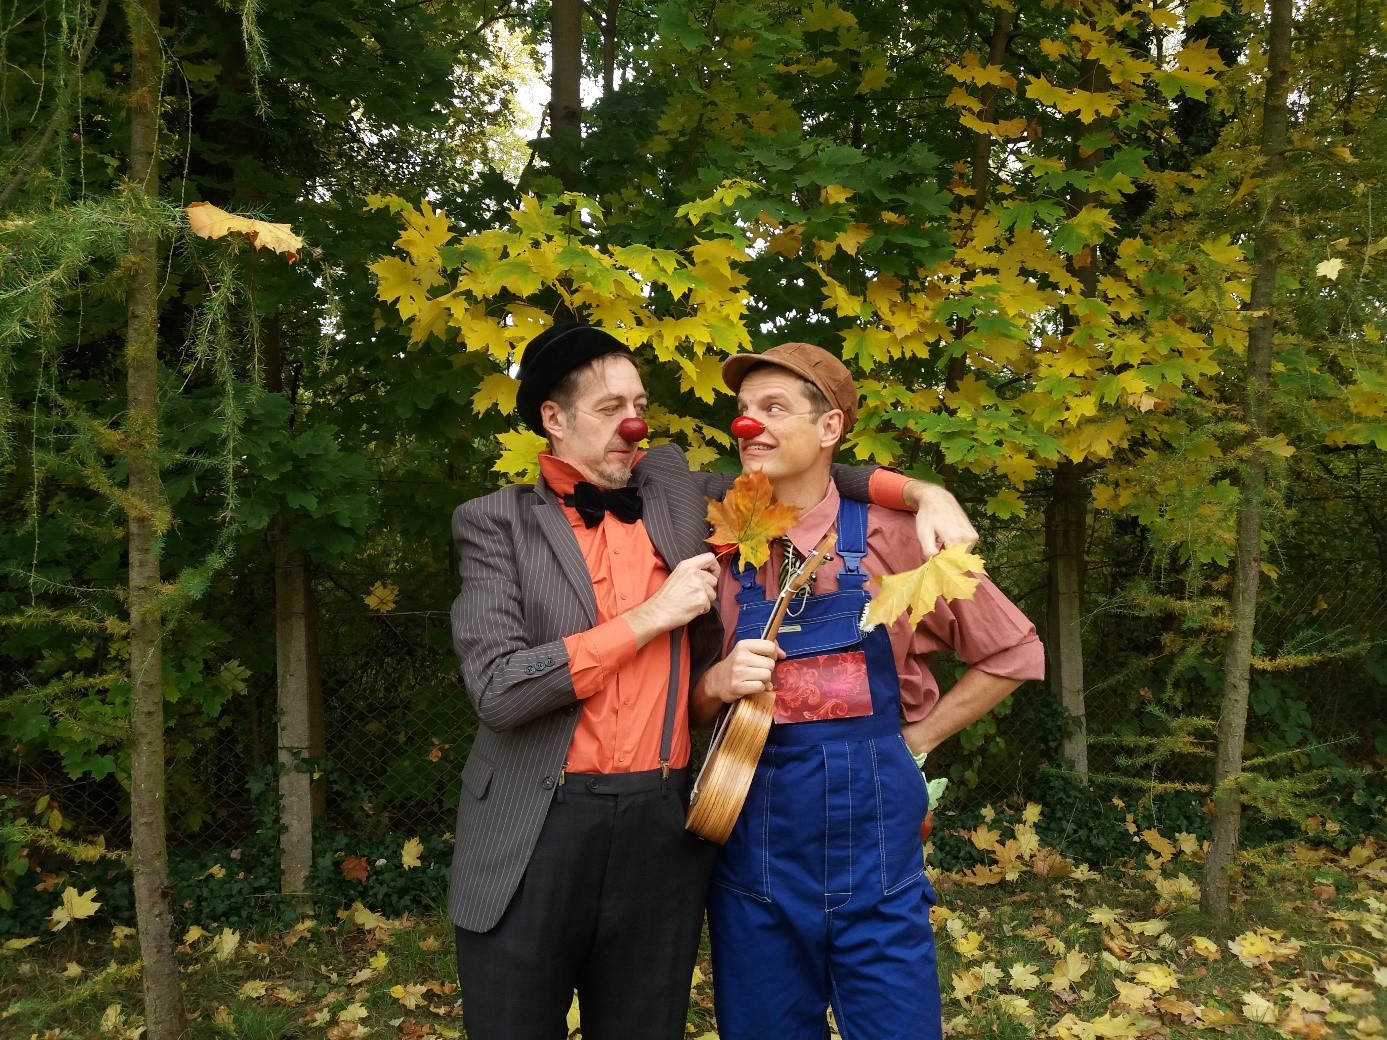 Na zdjęciu widać dwóch panów przebranych za clownów z akcji „Czerwone noski”